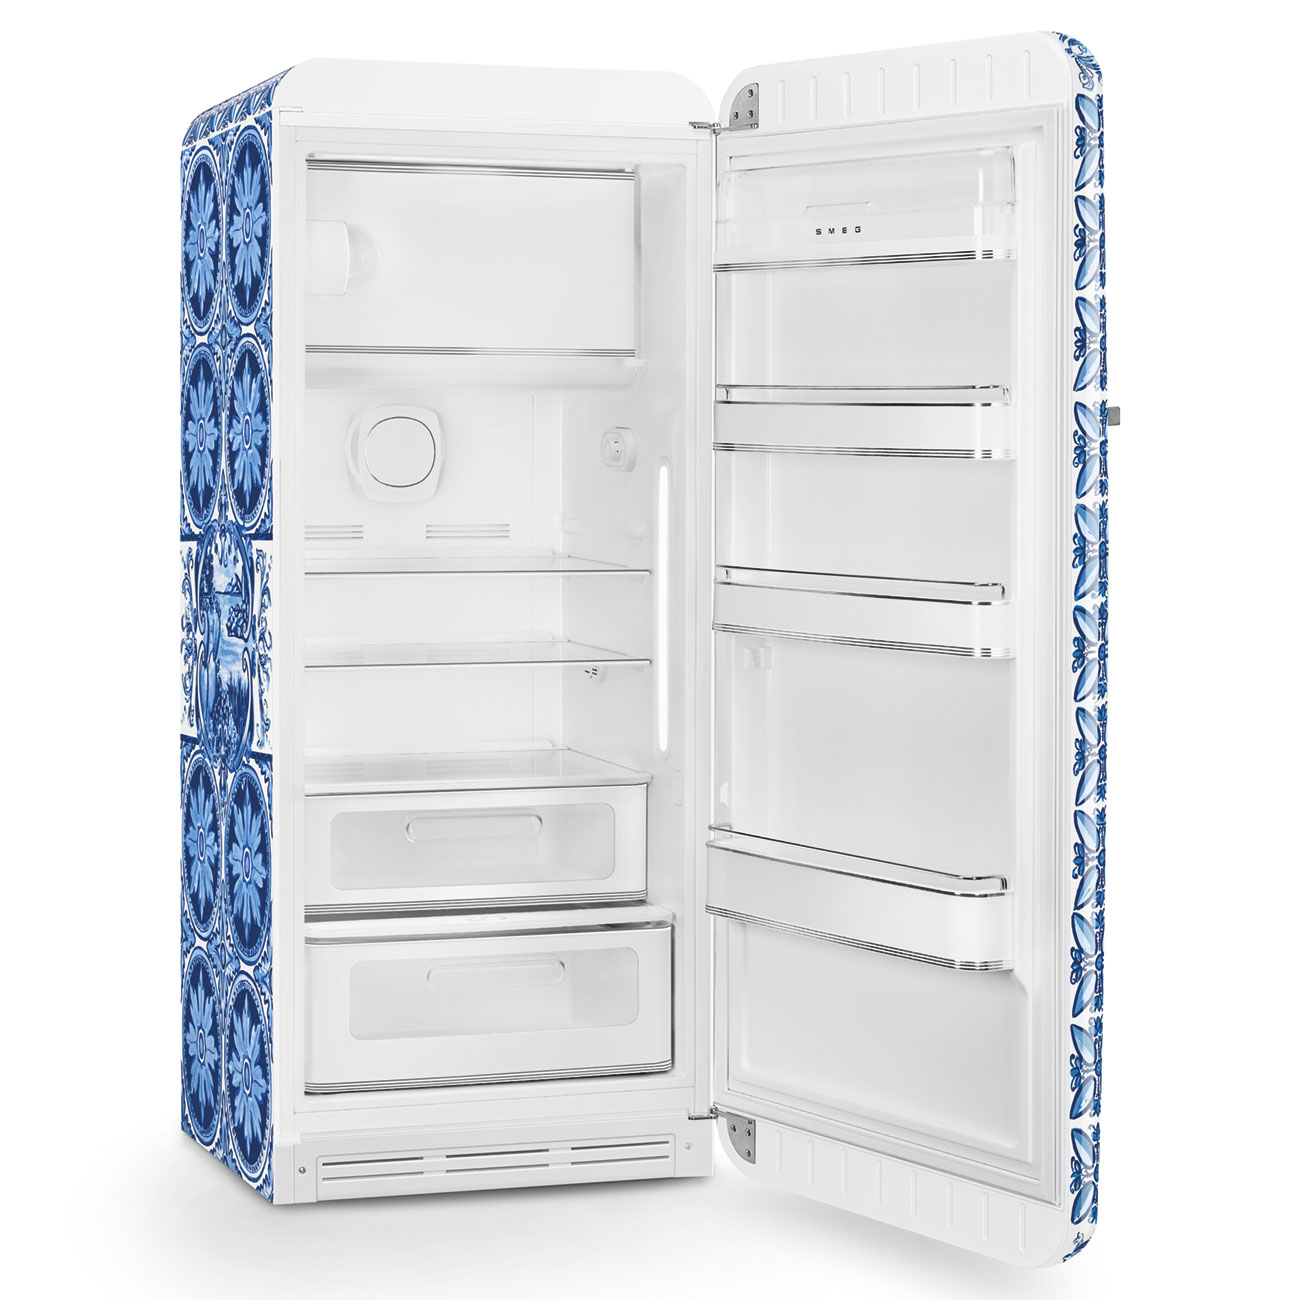 Sonderedition Retro-Kühlschränke von Smeg_3